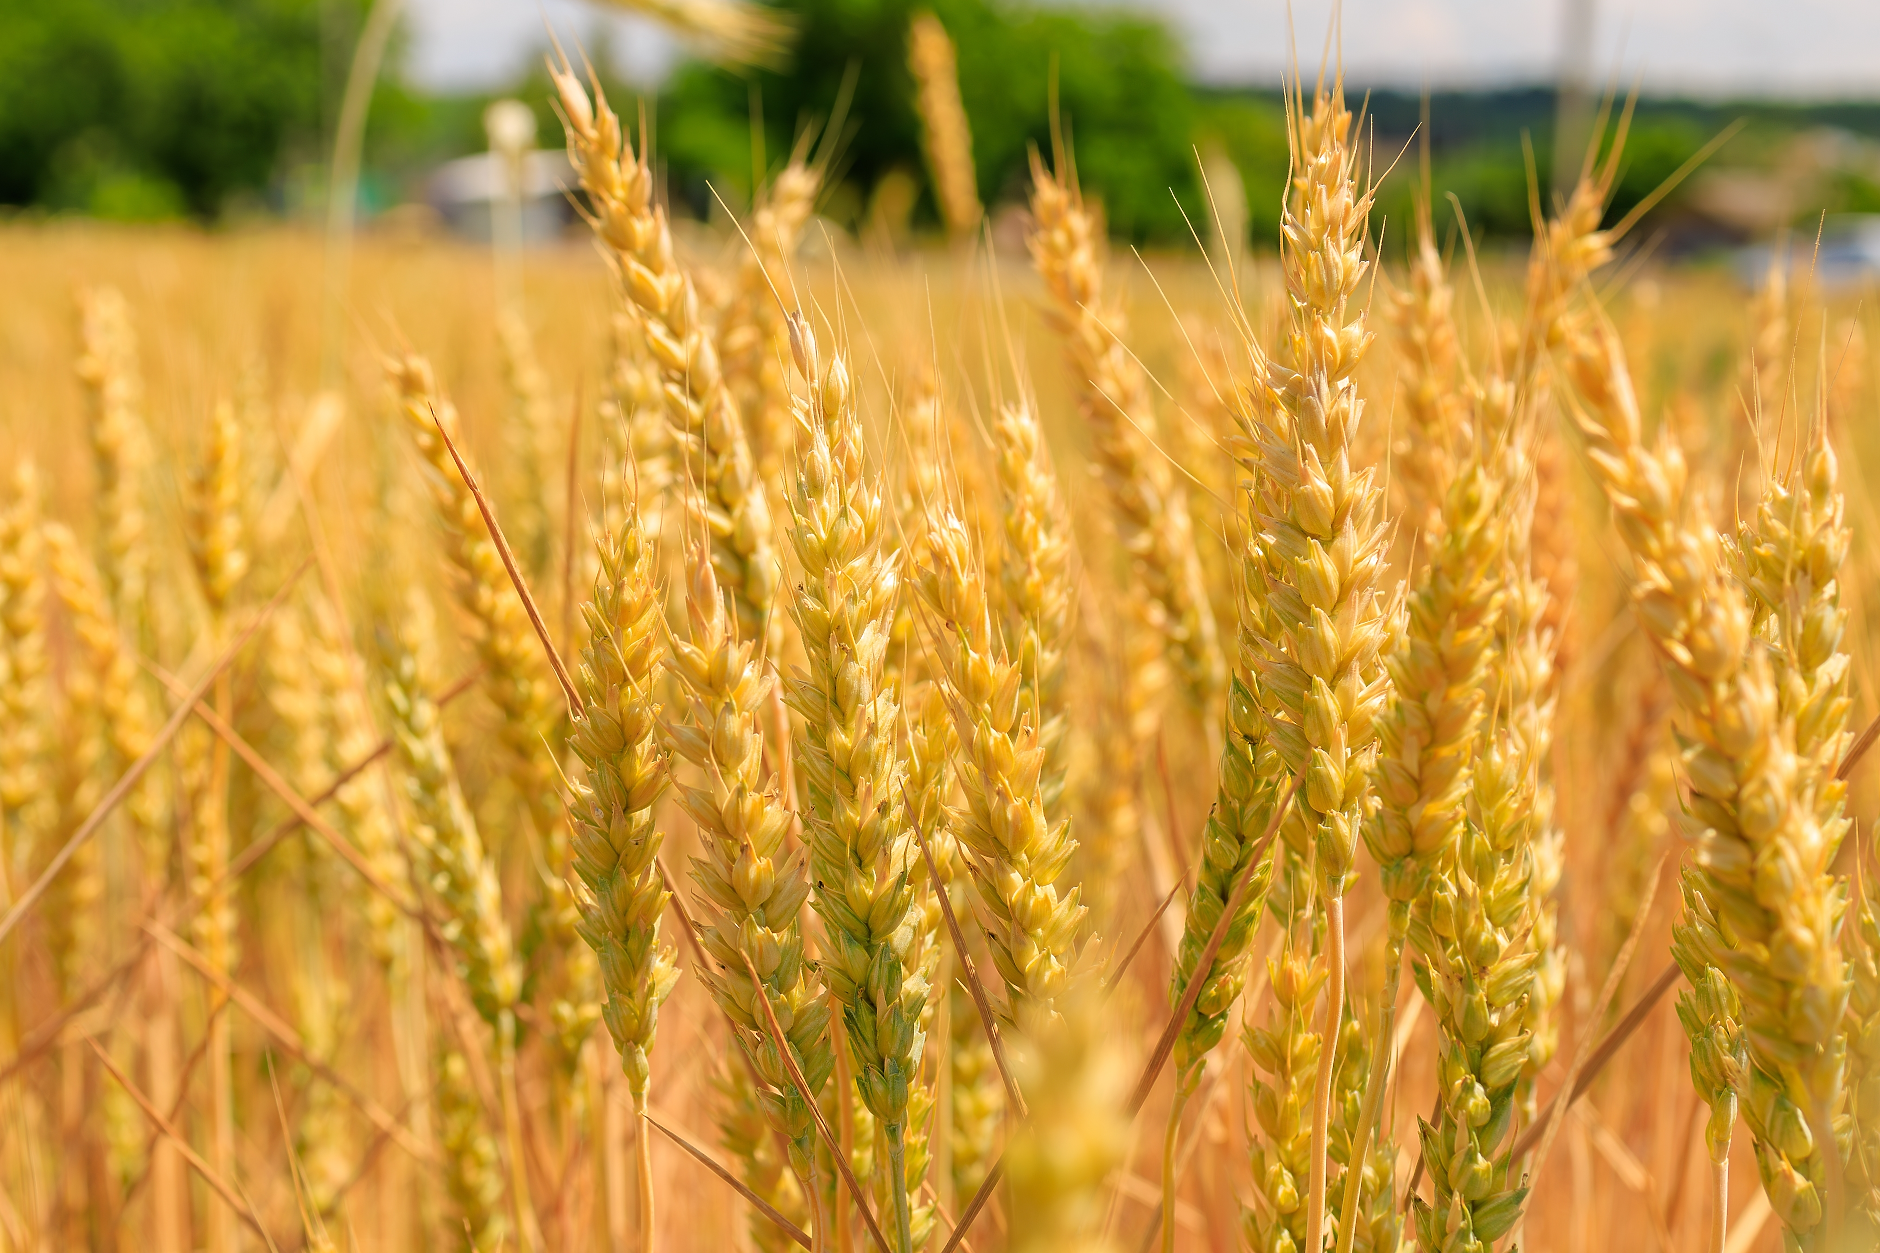 Румъния въвежда ограничения върху вноса на украинско зърно